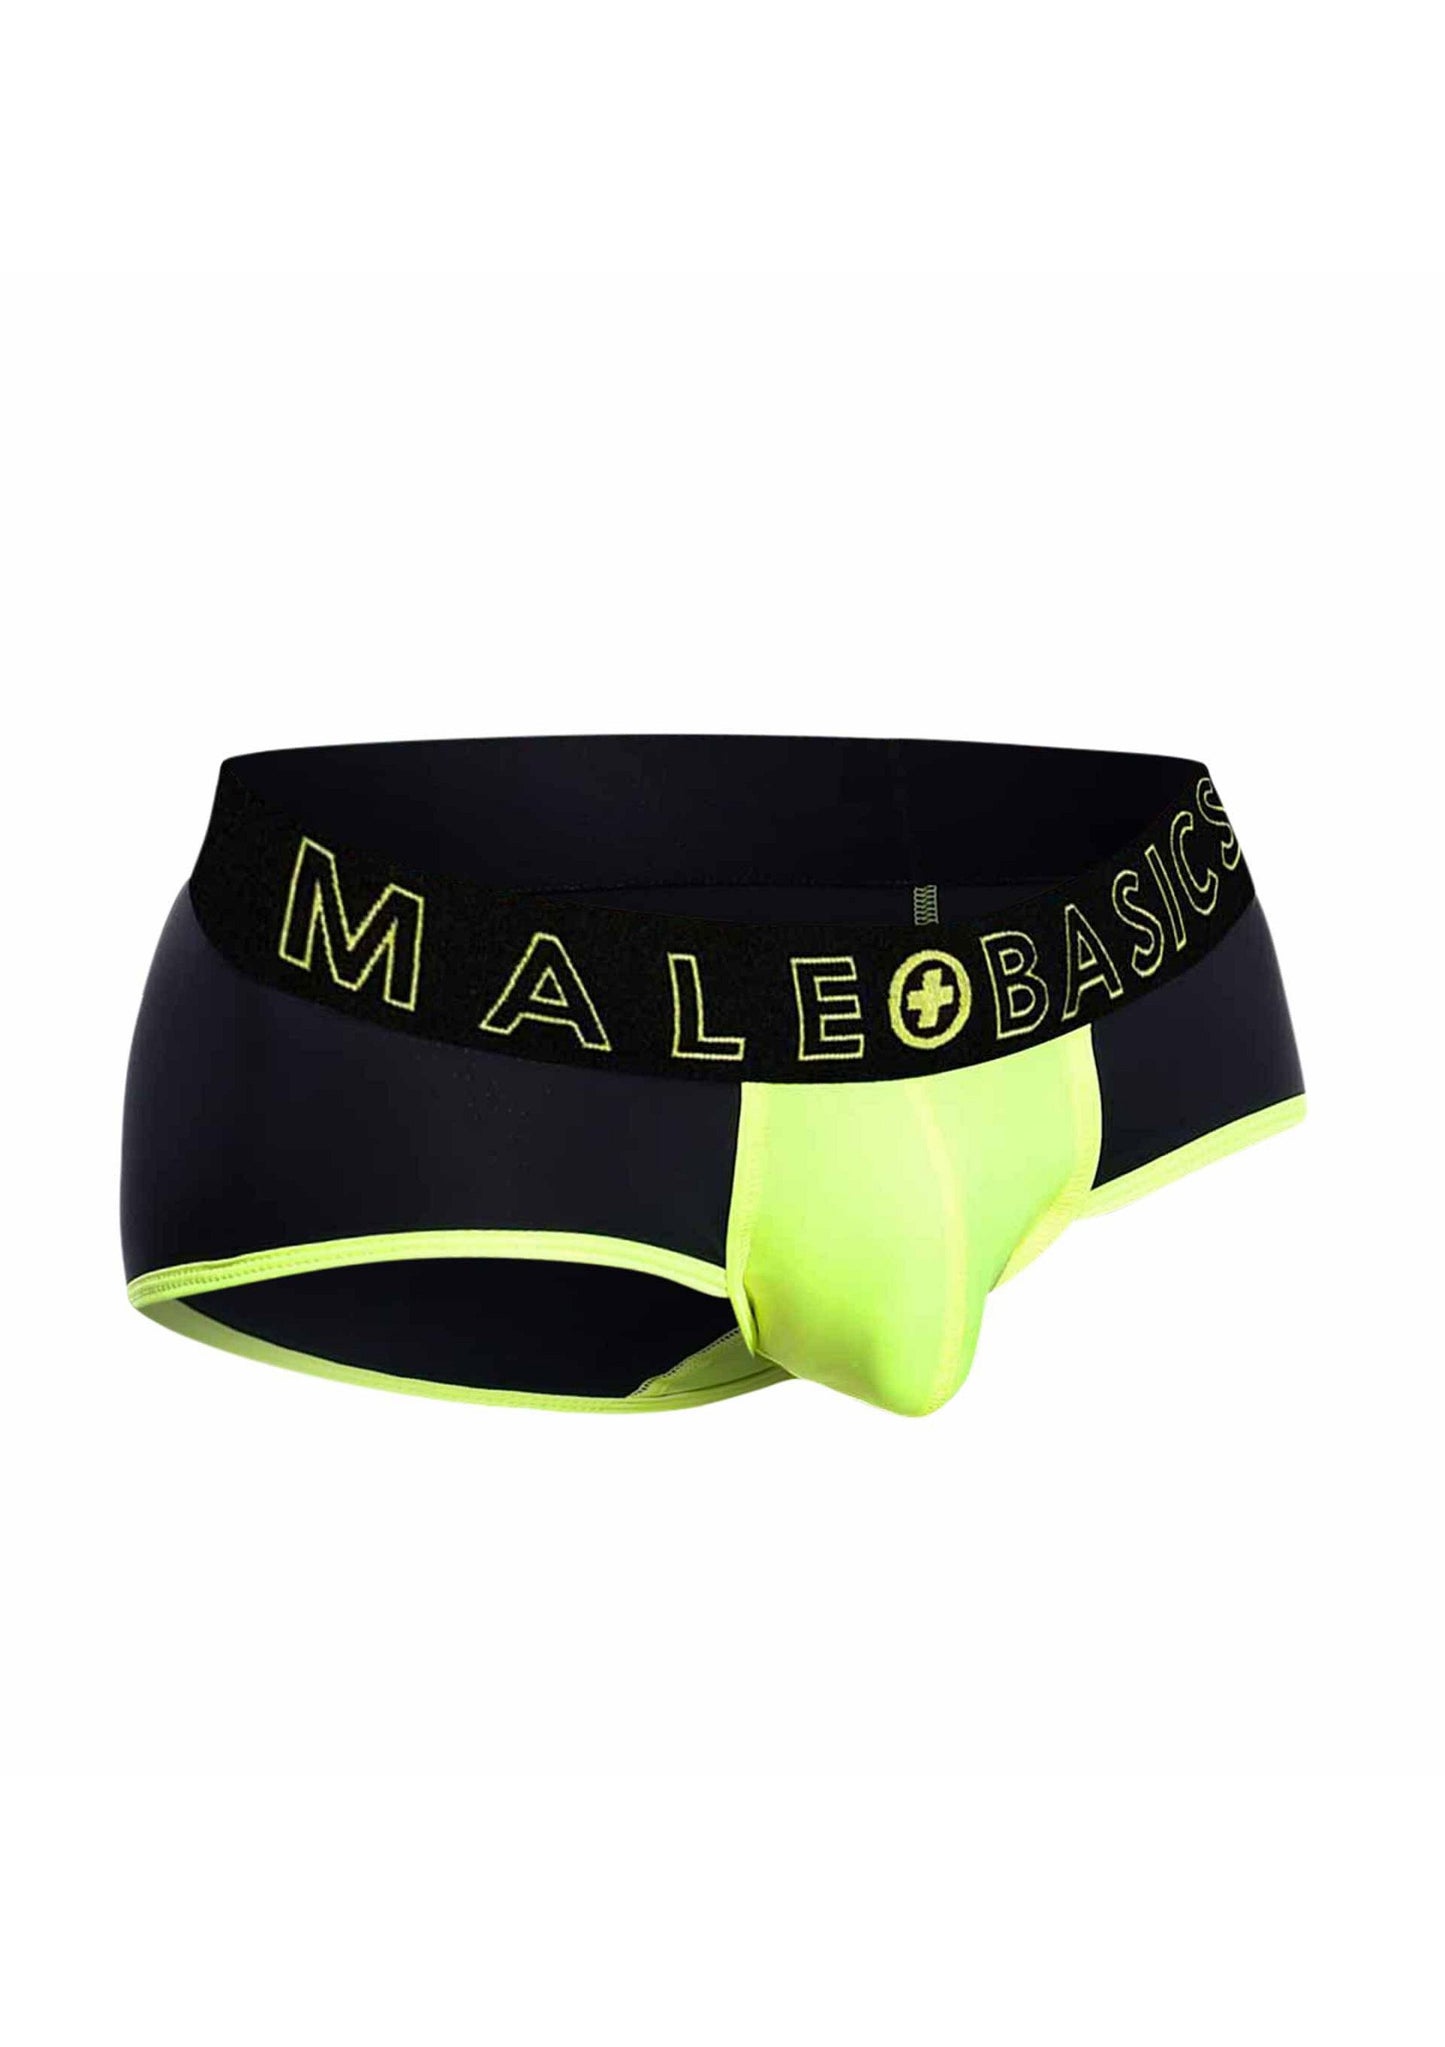 MaleBasics Neon Brief YELLOW S - 3